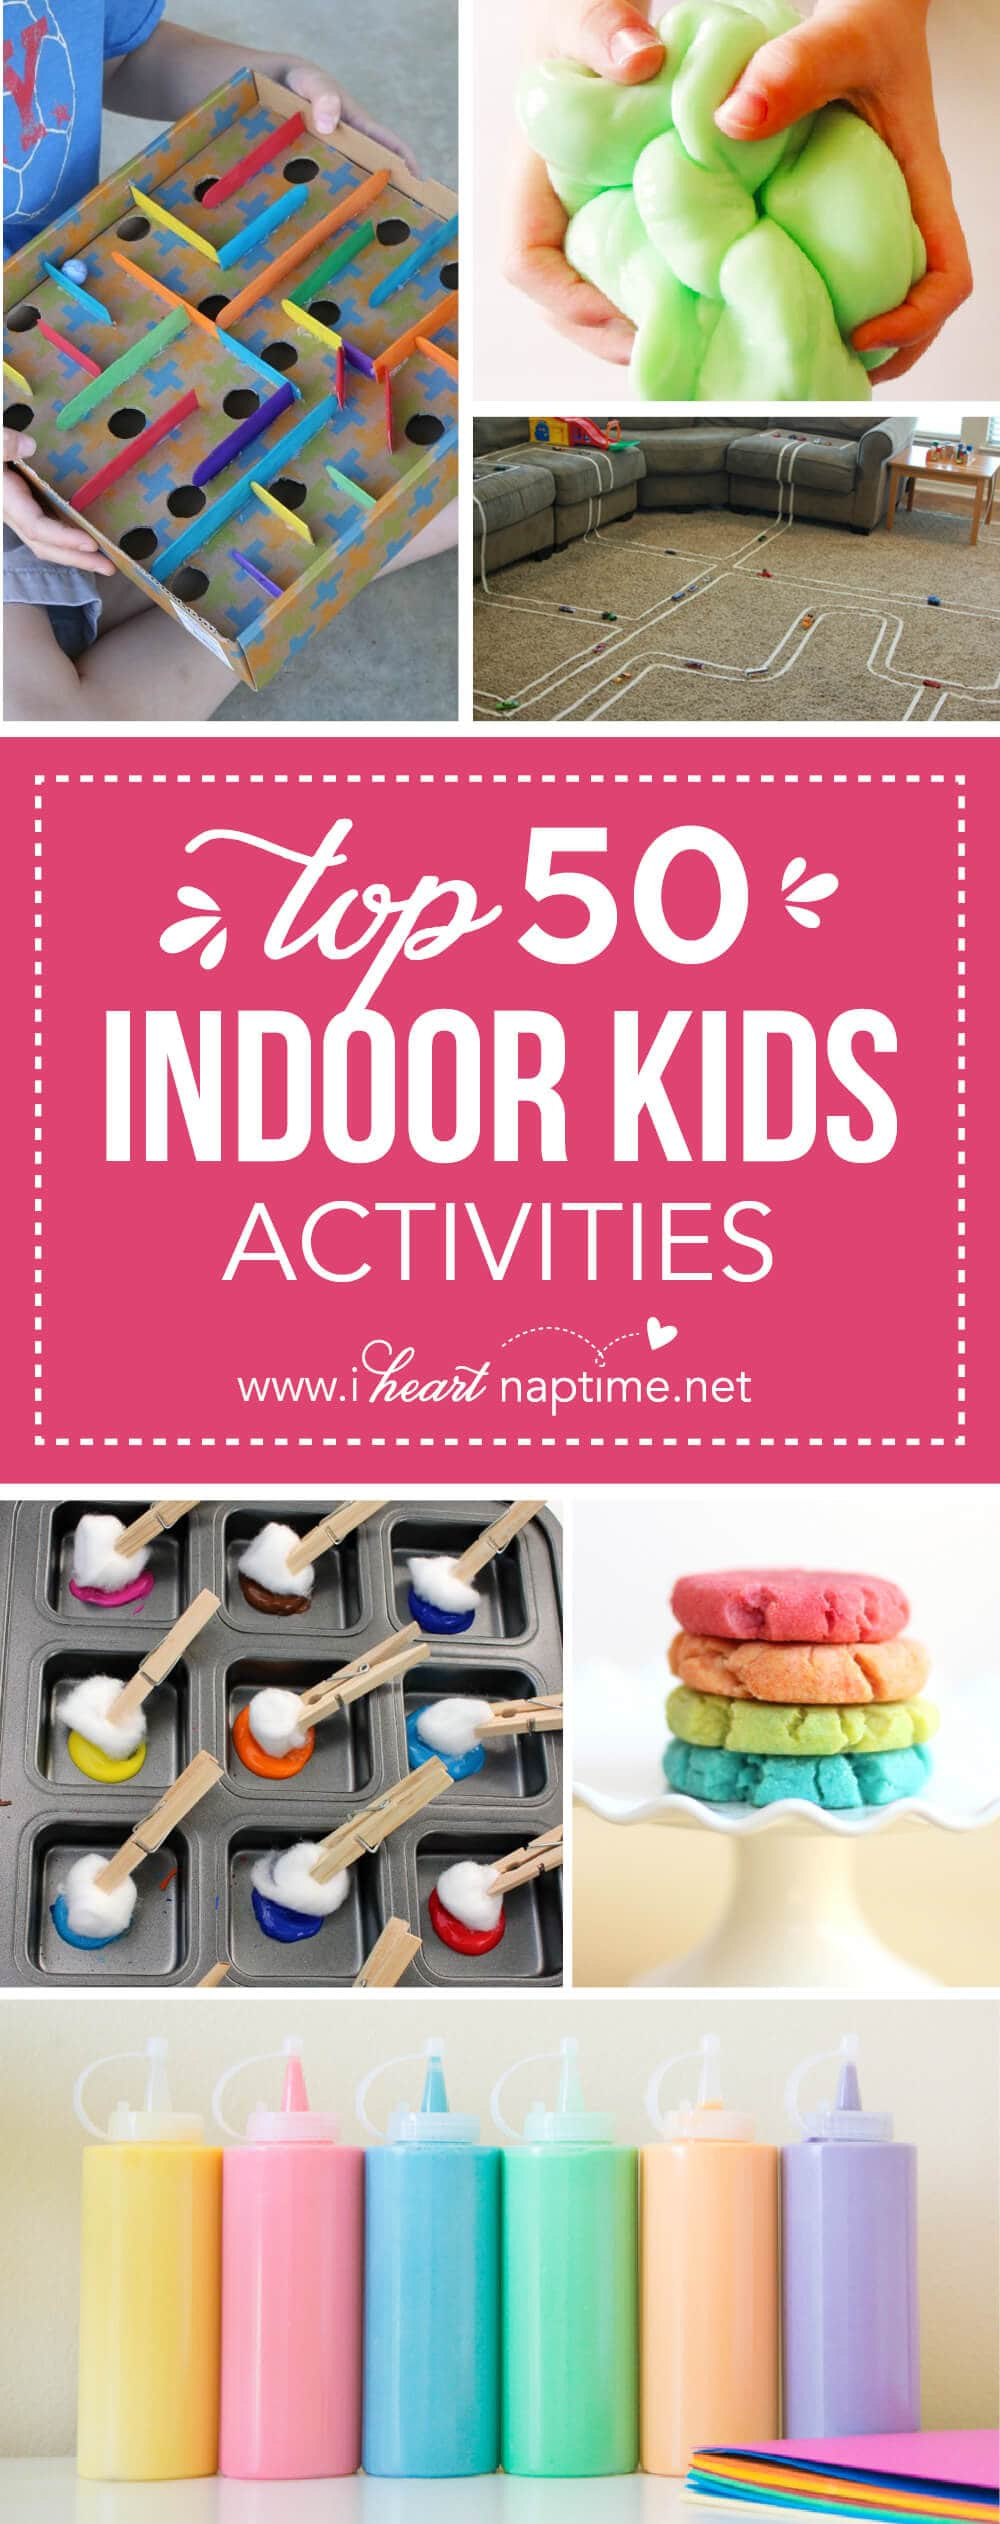 Indoor Activities With Kids
 Top 50 Indoor Kids Activities I Heart Nap Time